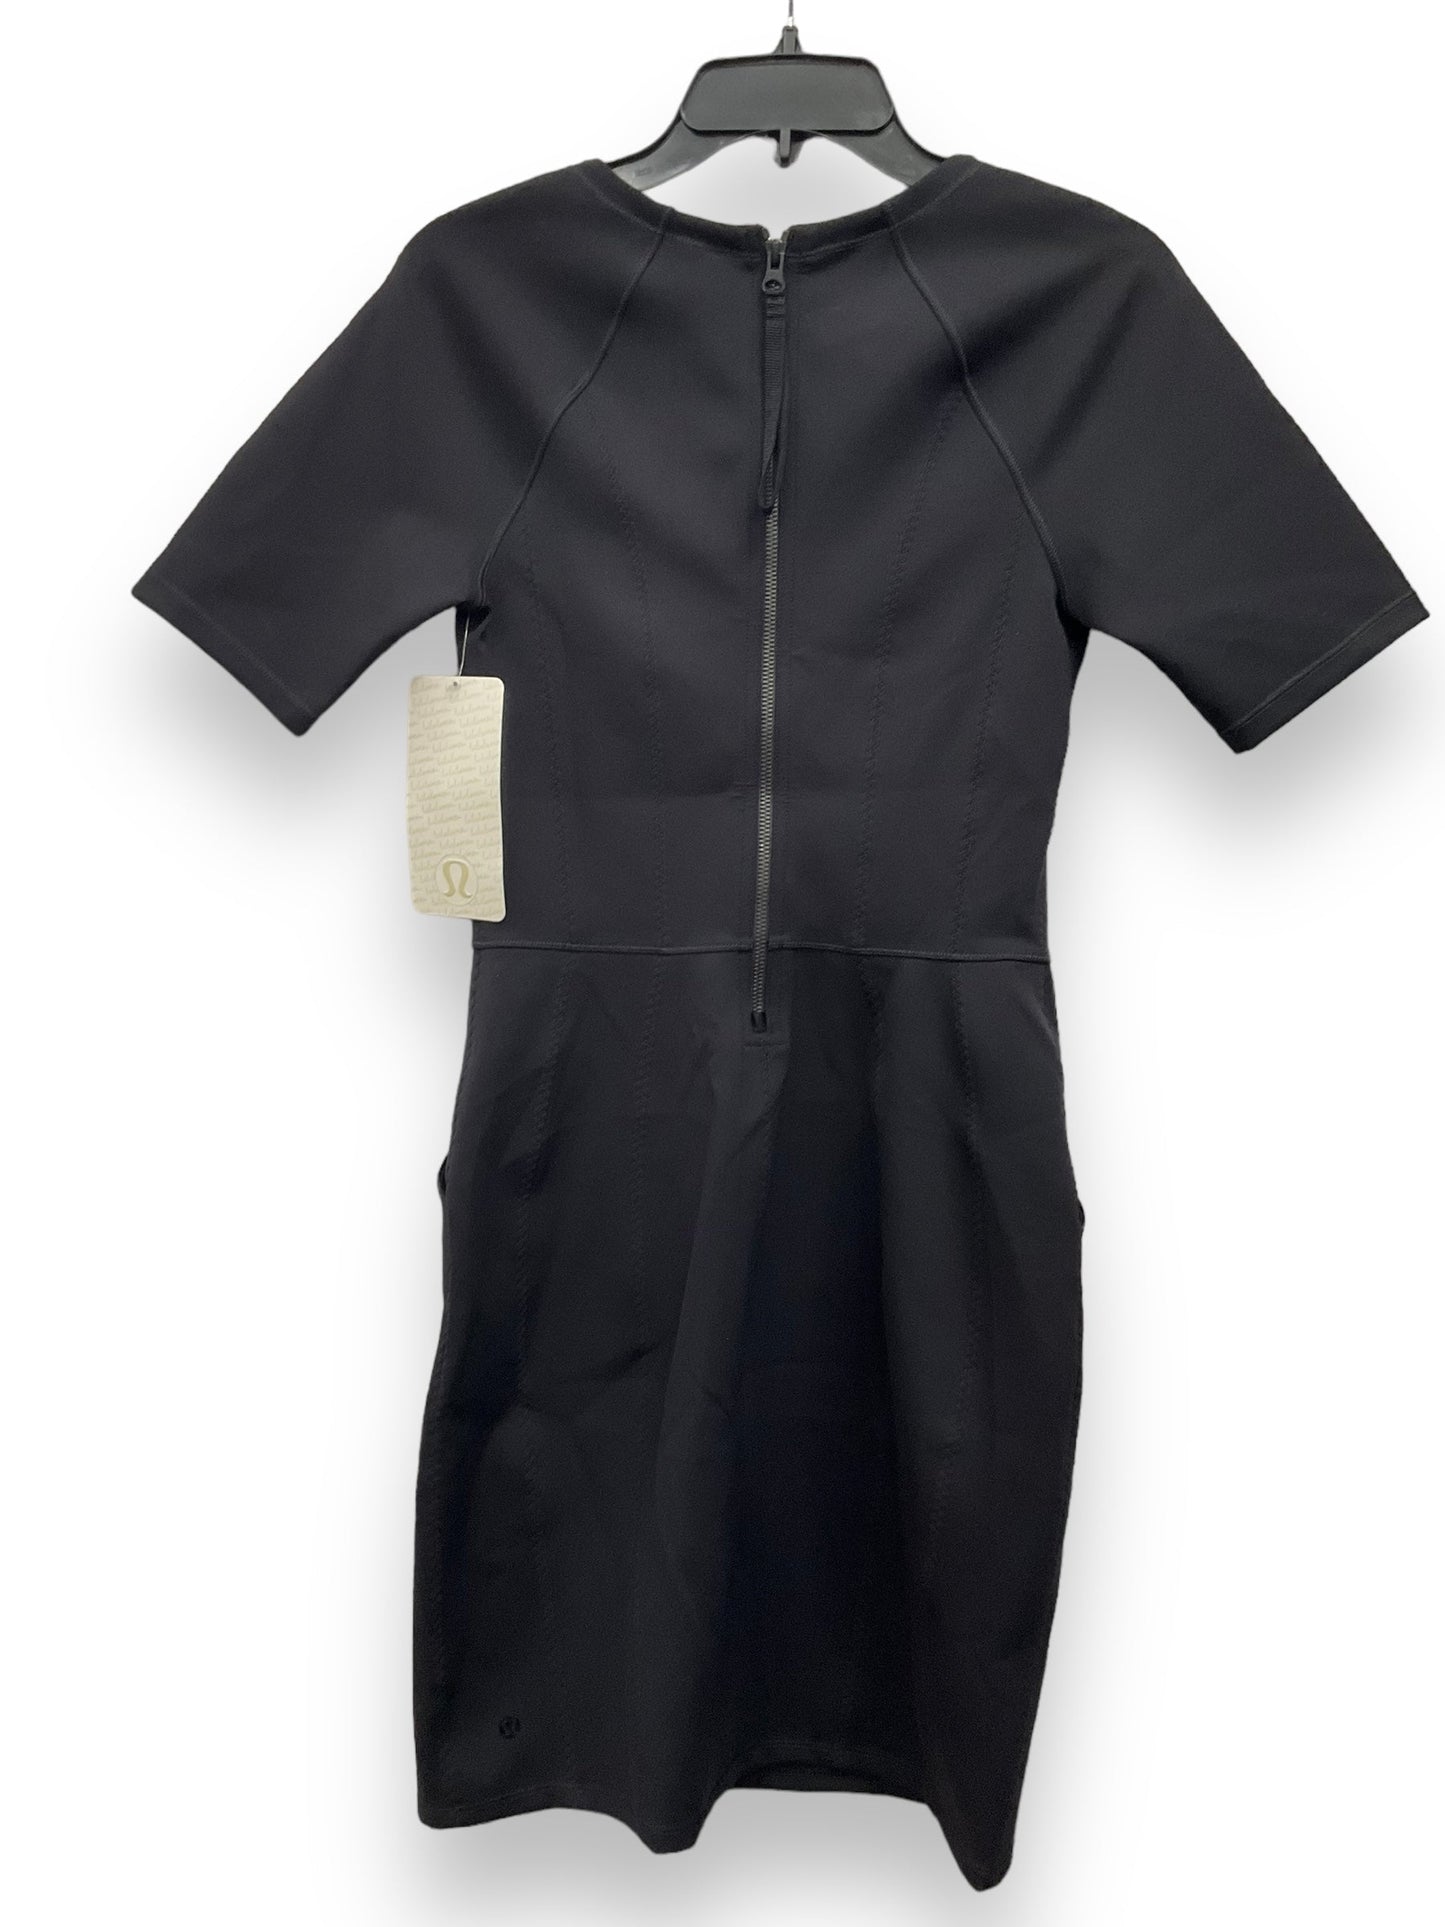 Black Athletic Dress Lululemon, Size S